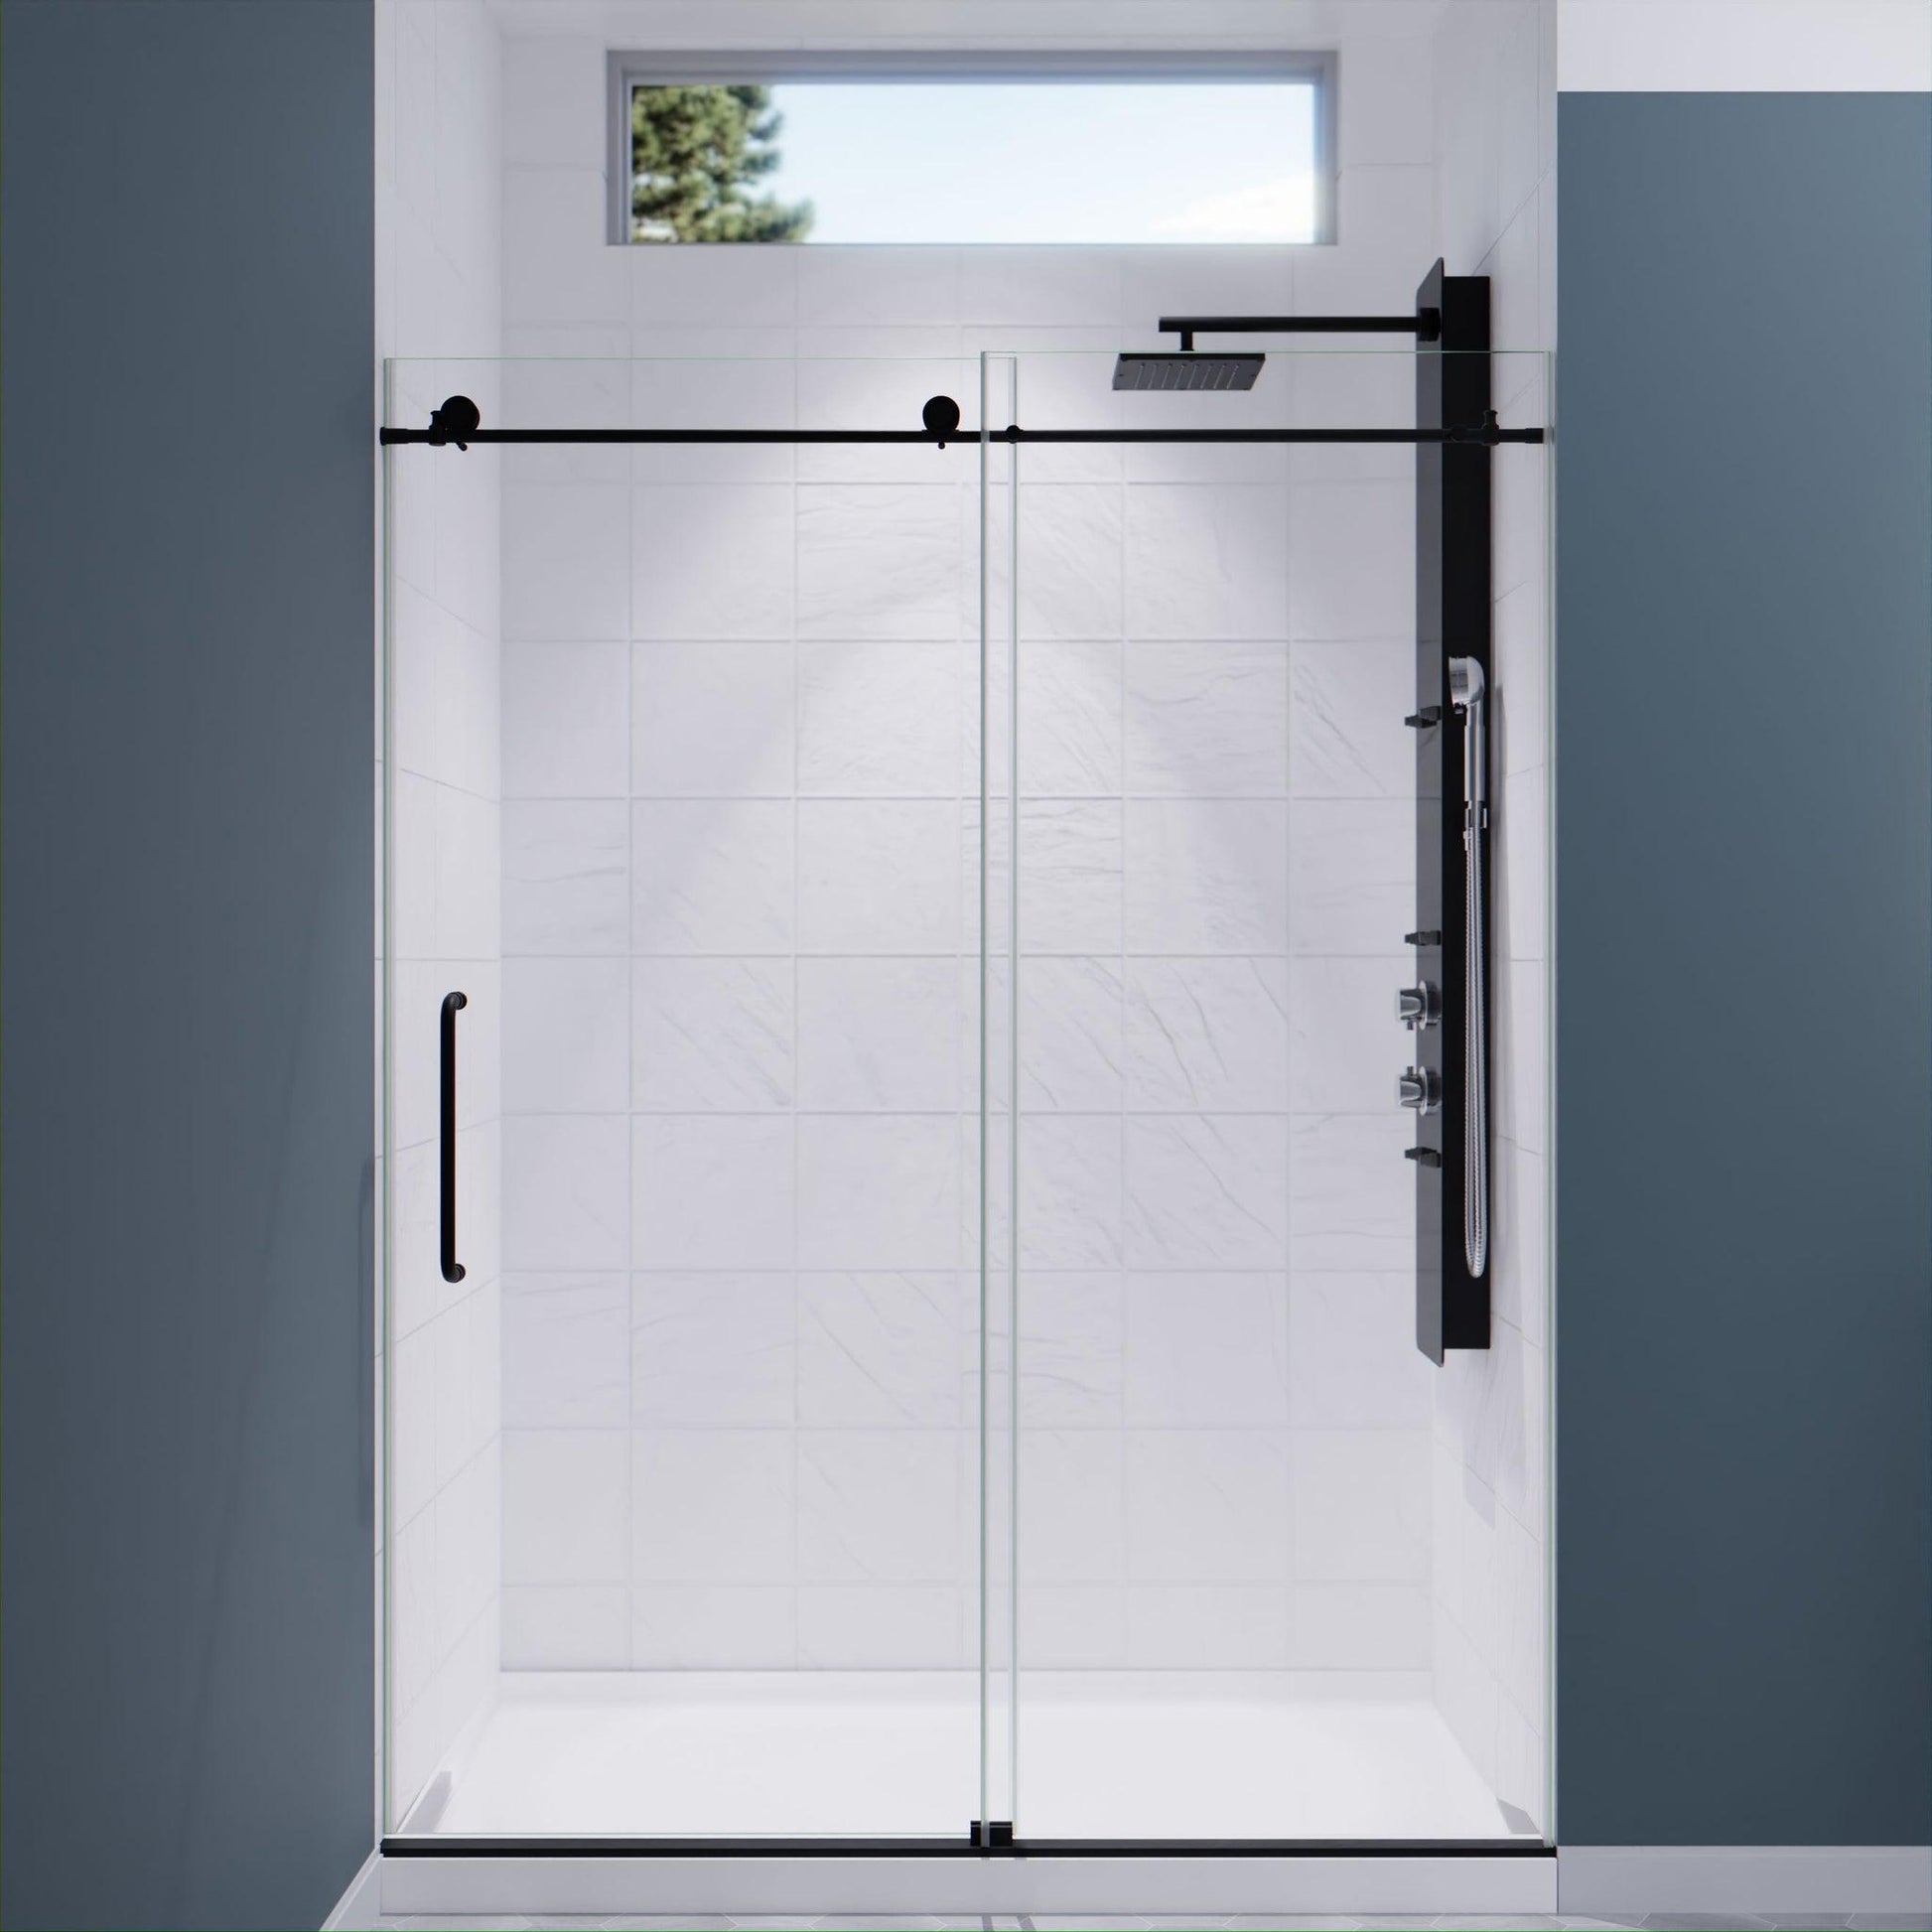 ANZZI 76 x 48 inch frameless shower door in brushed nickel